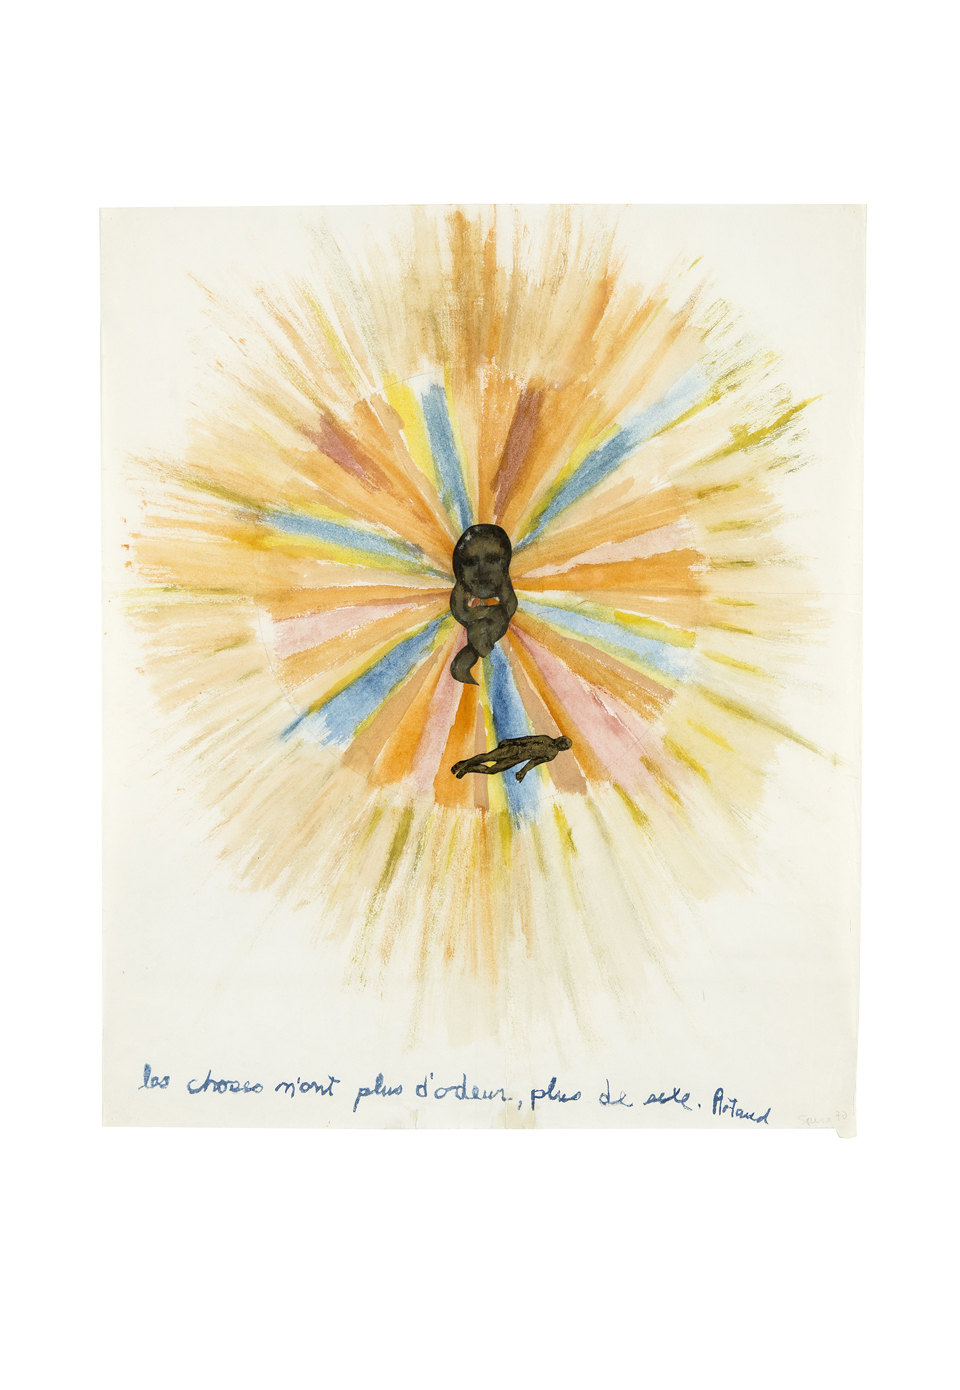 Nancy Spero: "Artaud Paintings - Les Choses n'ont plus d'odeur", 1970, Courtesy of the Artist